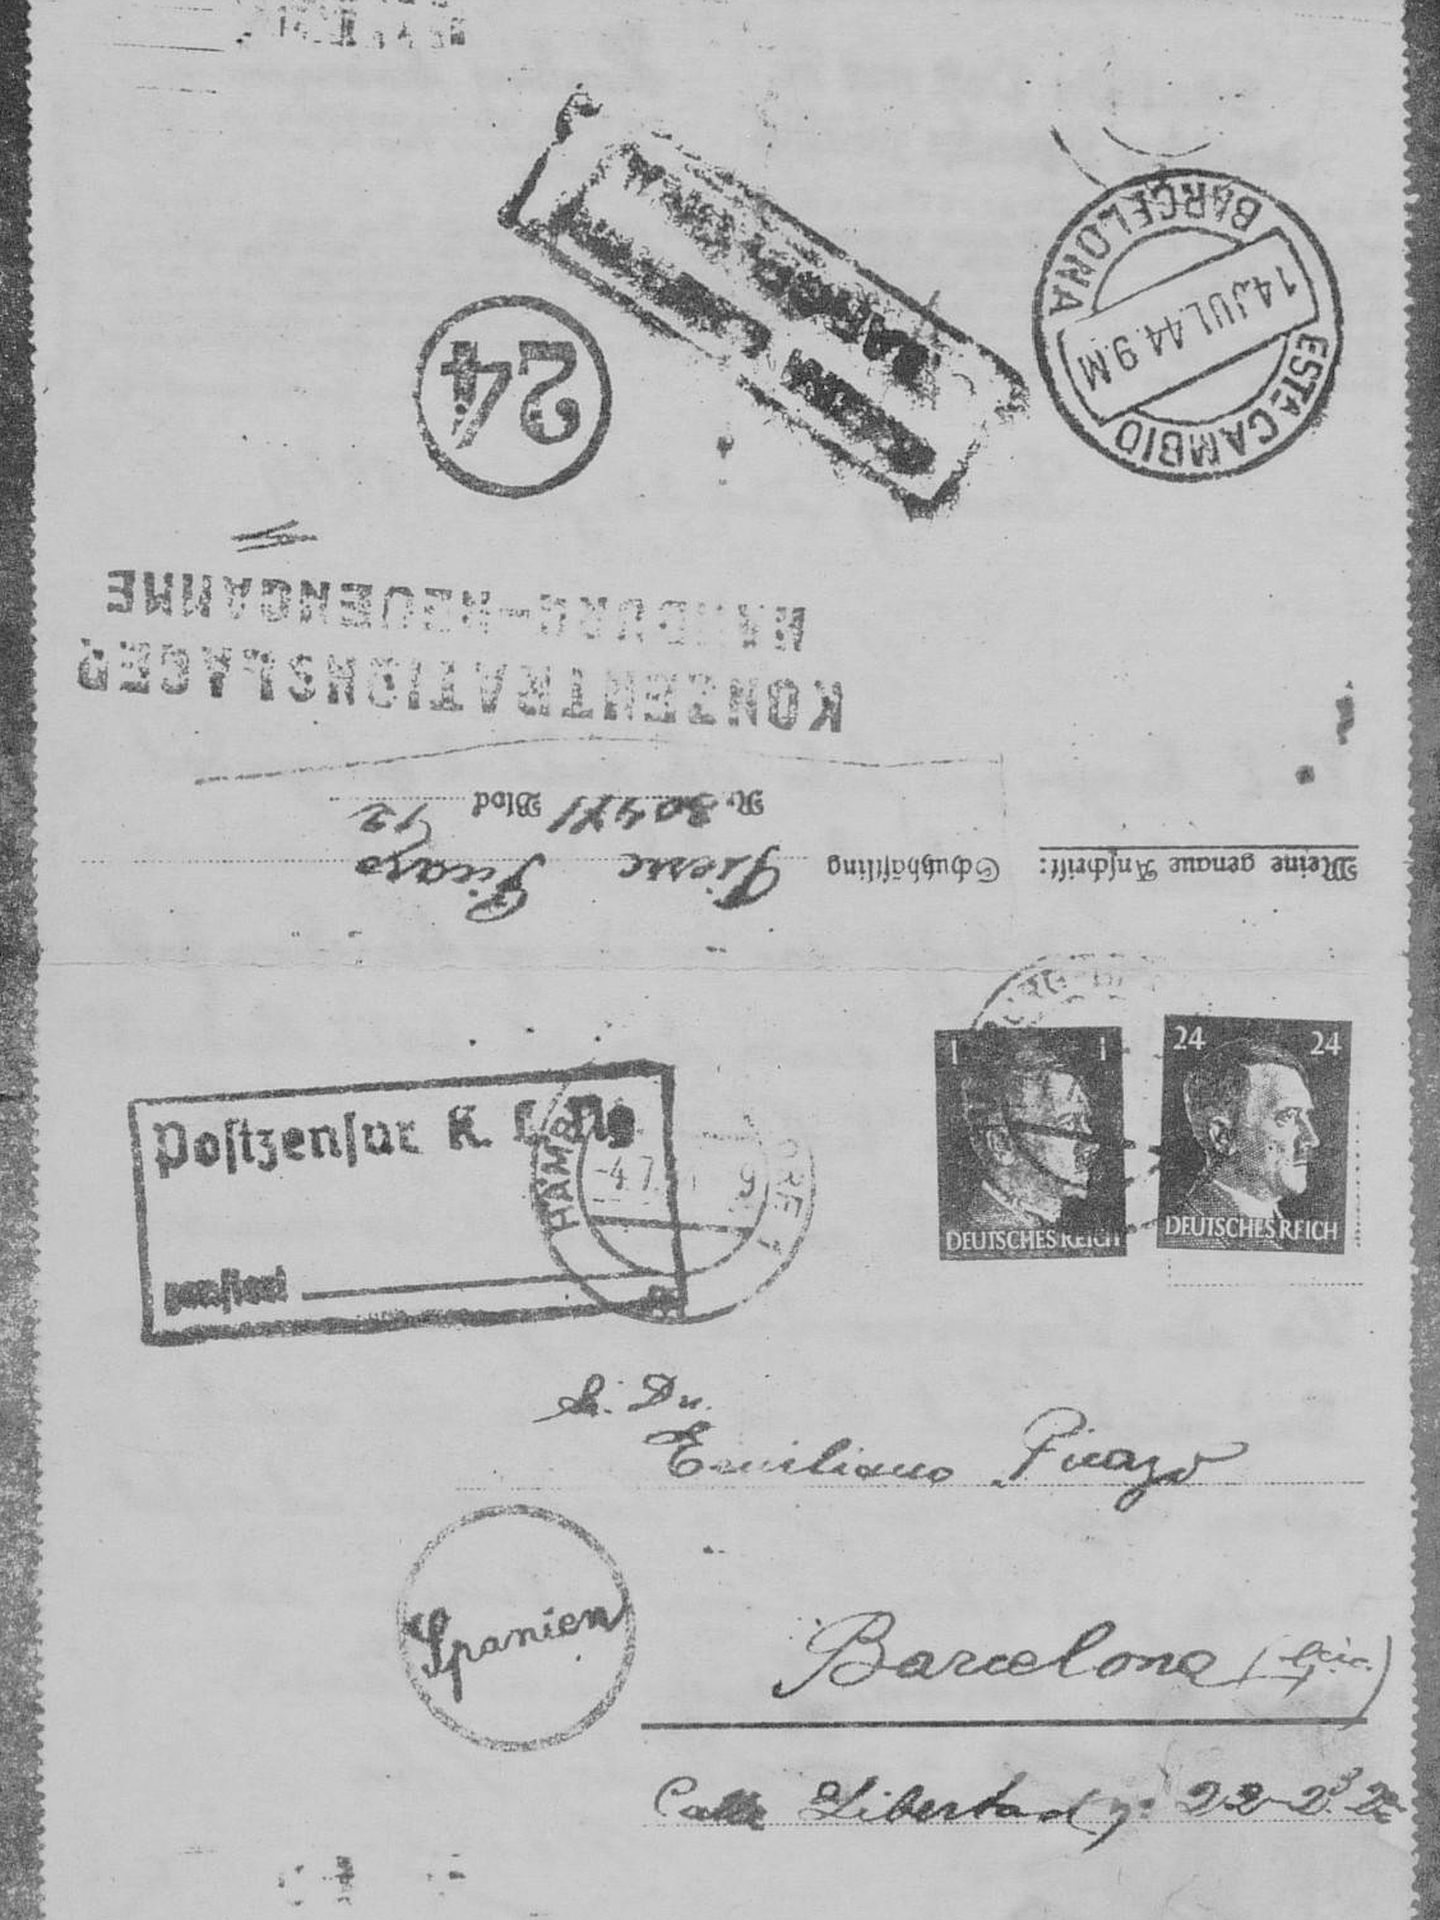 12. La carta que mandó un español desde Neuengamme a su familia. Cortesía de Antonio Muñoz